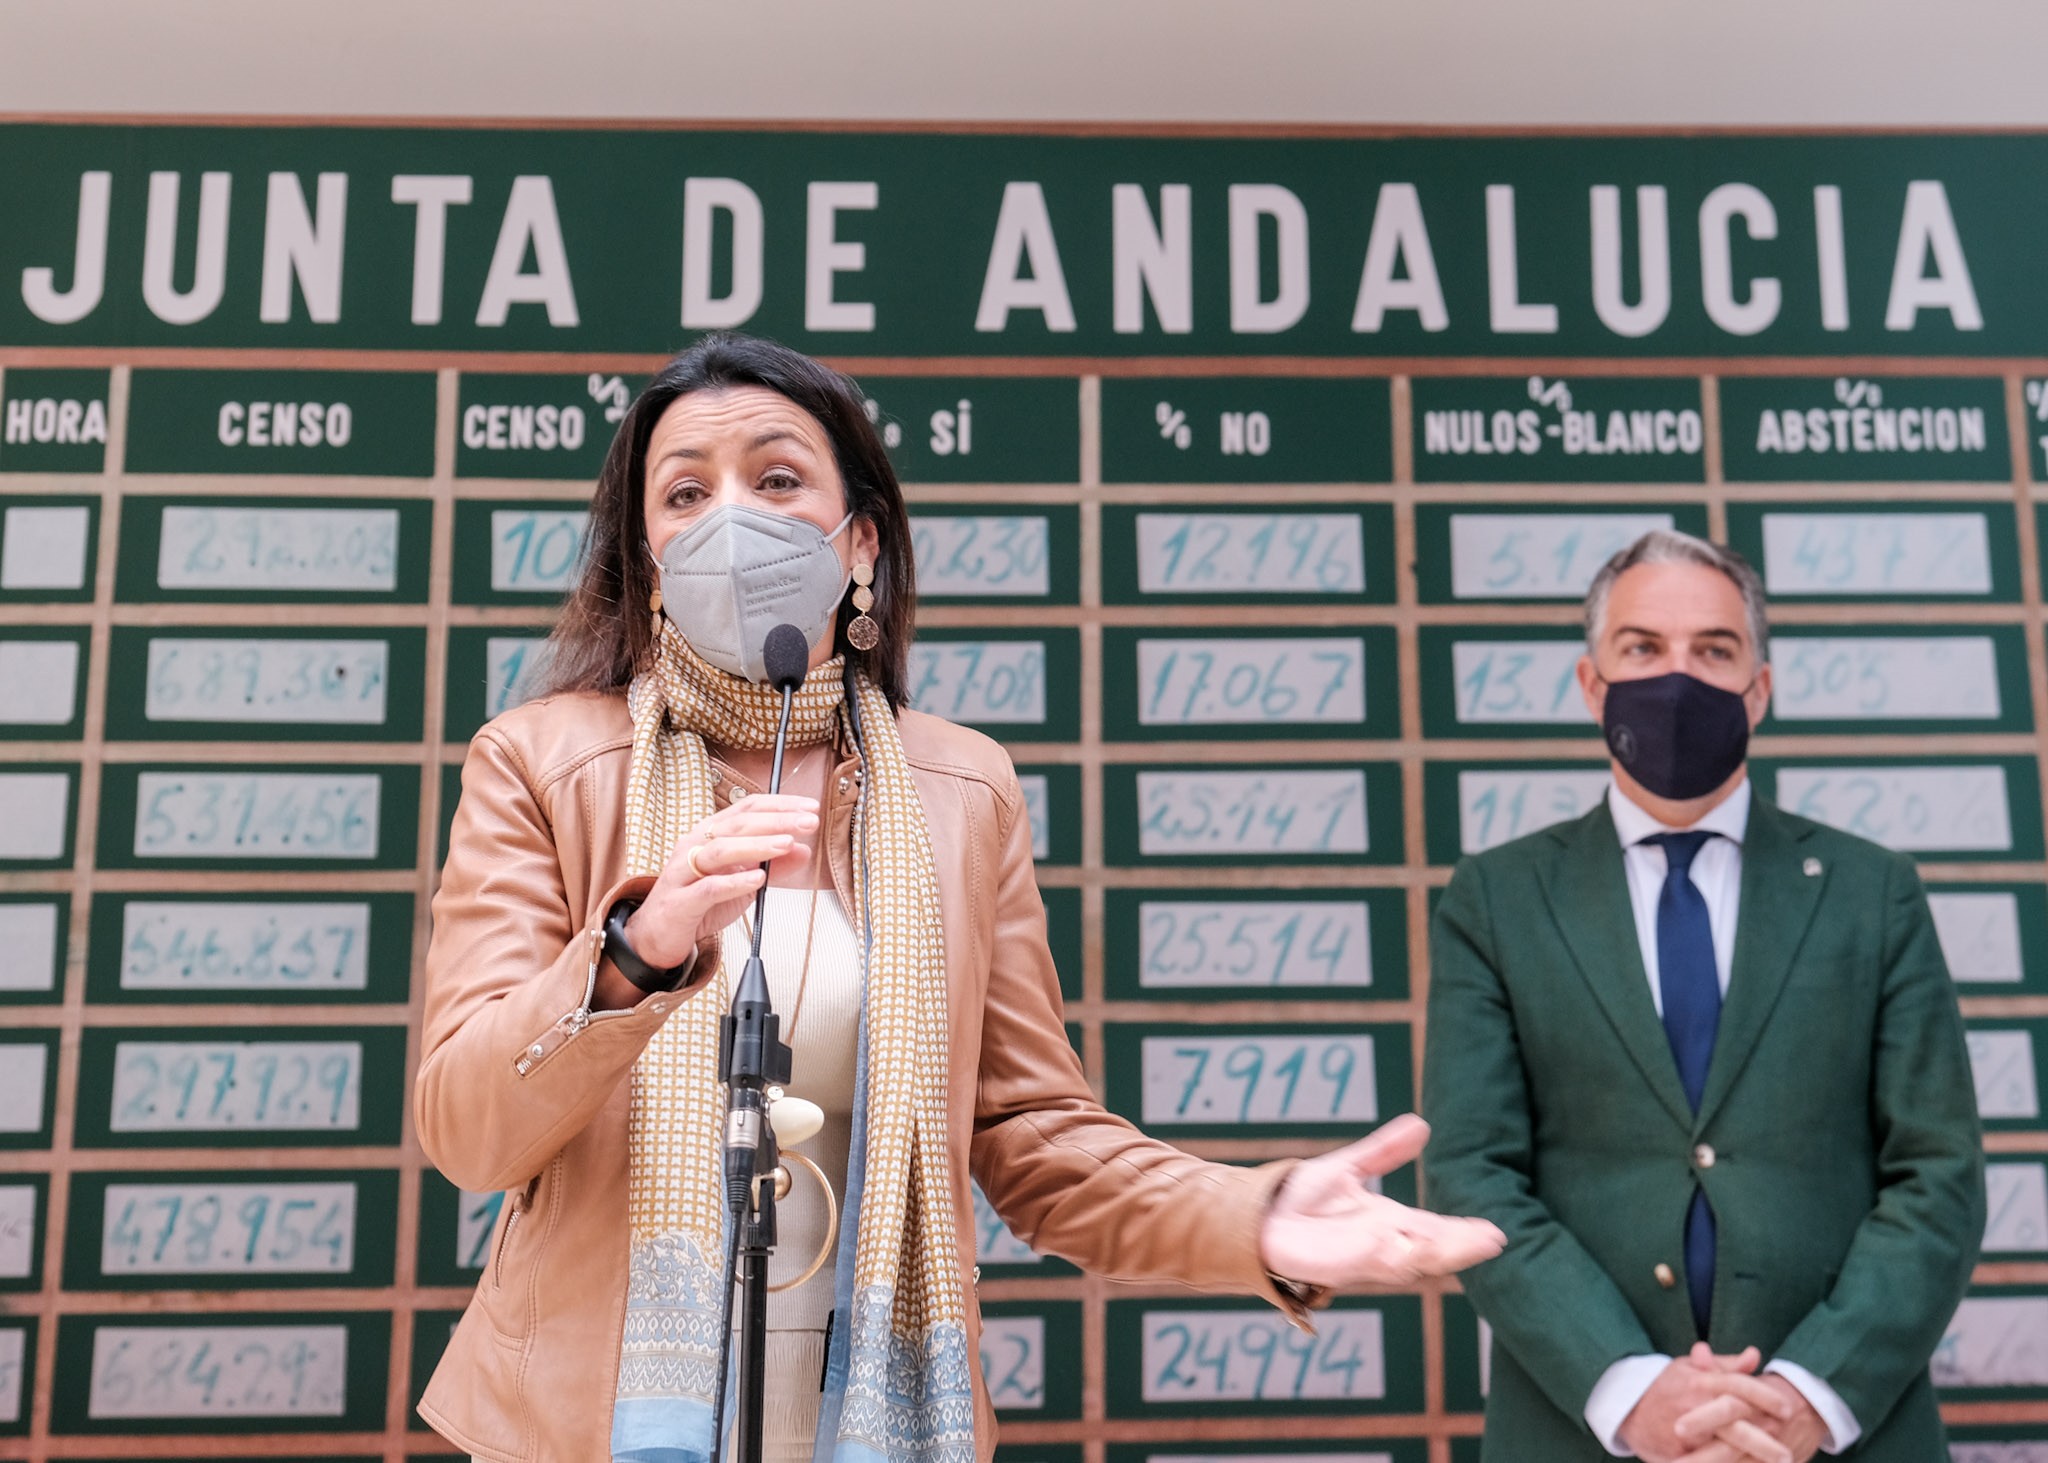     La presidenta del Parlamento, Marta Bosquet, interviene ante la rplica de la pizarra utilizada para el recuento del referndum del 28-F donada por el Centro de Estudios Andaluces